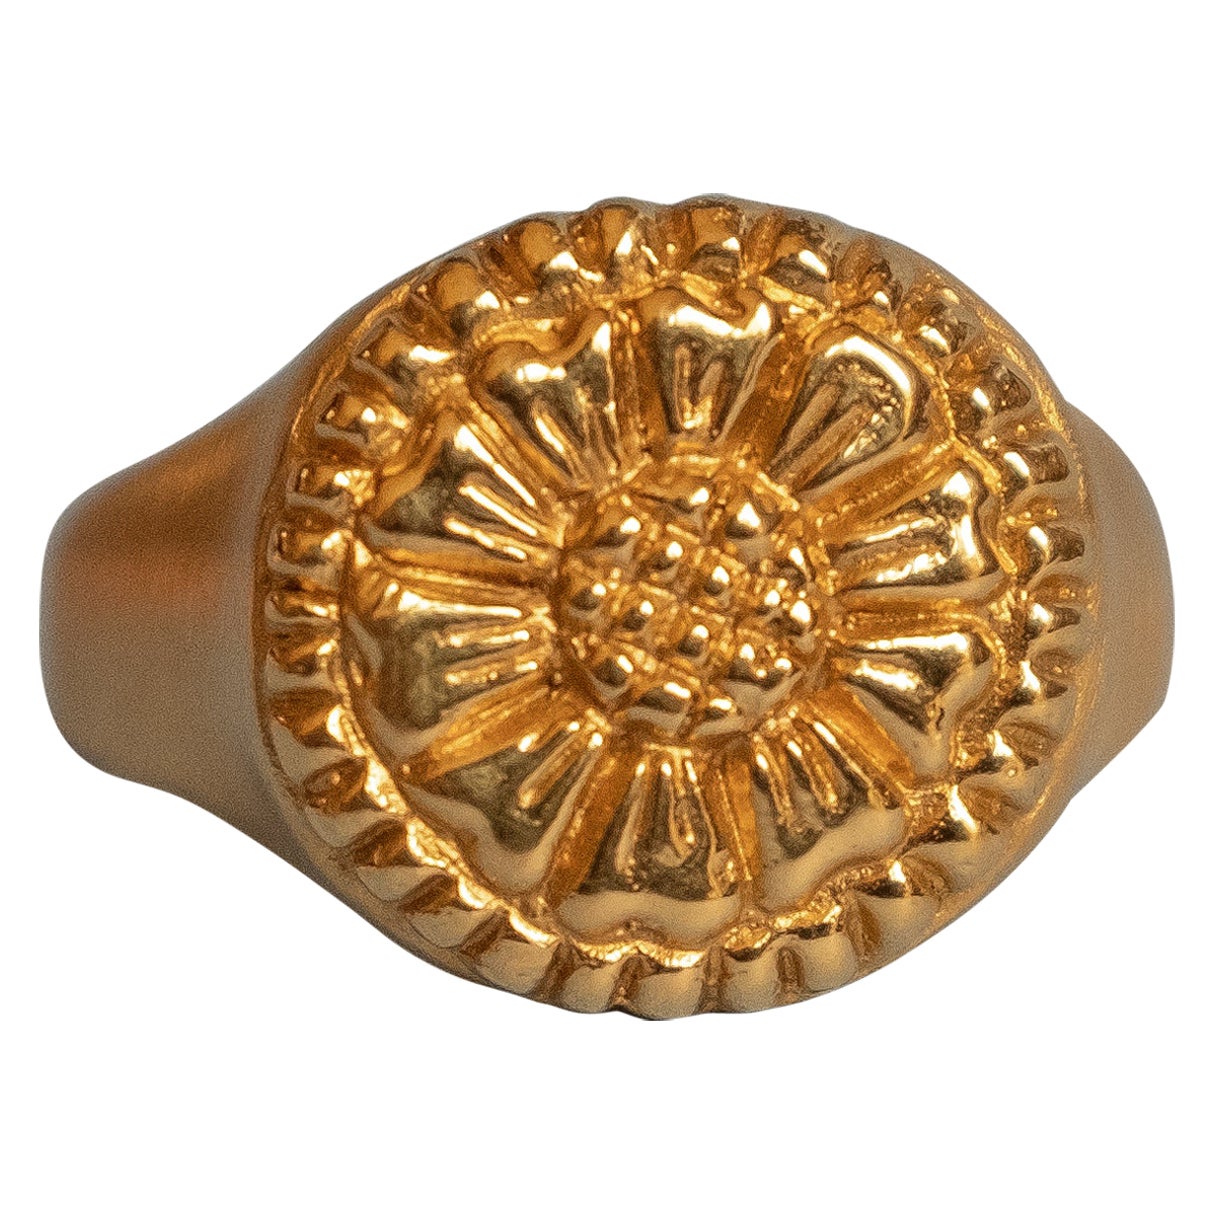 The Ellis Signet Ring in 22k gold by Rosa de Weerd